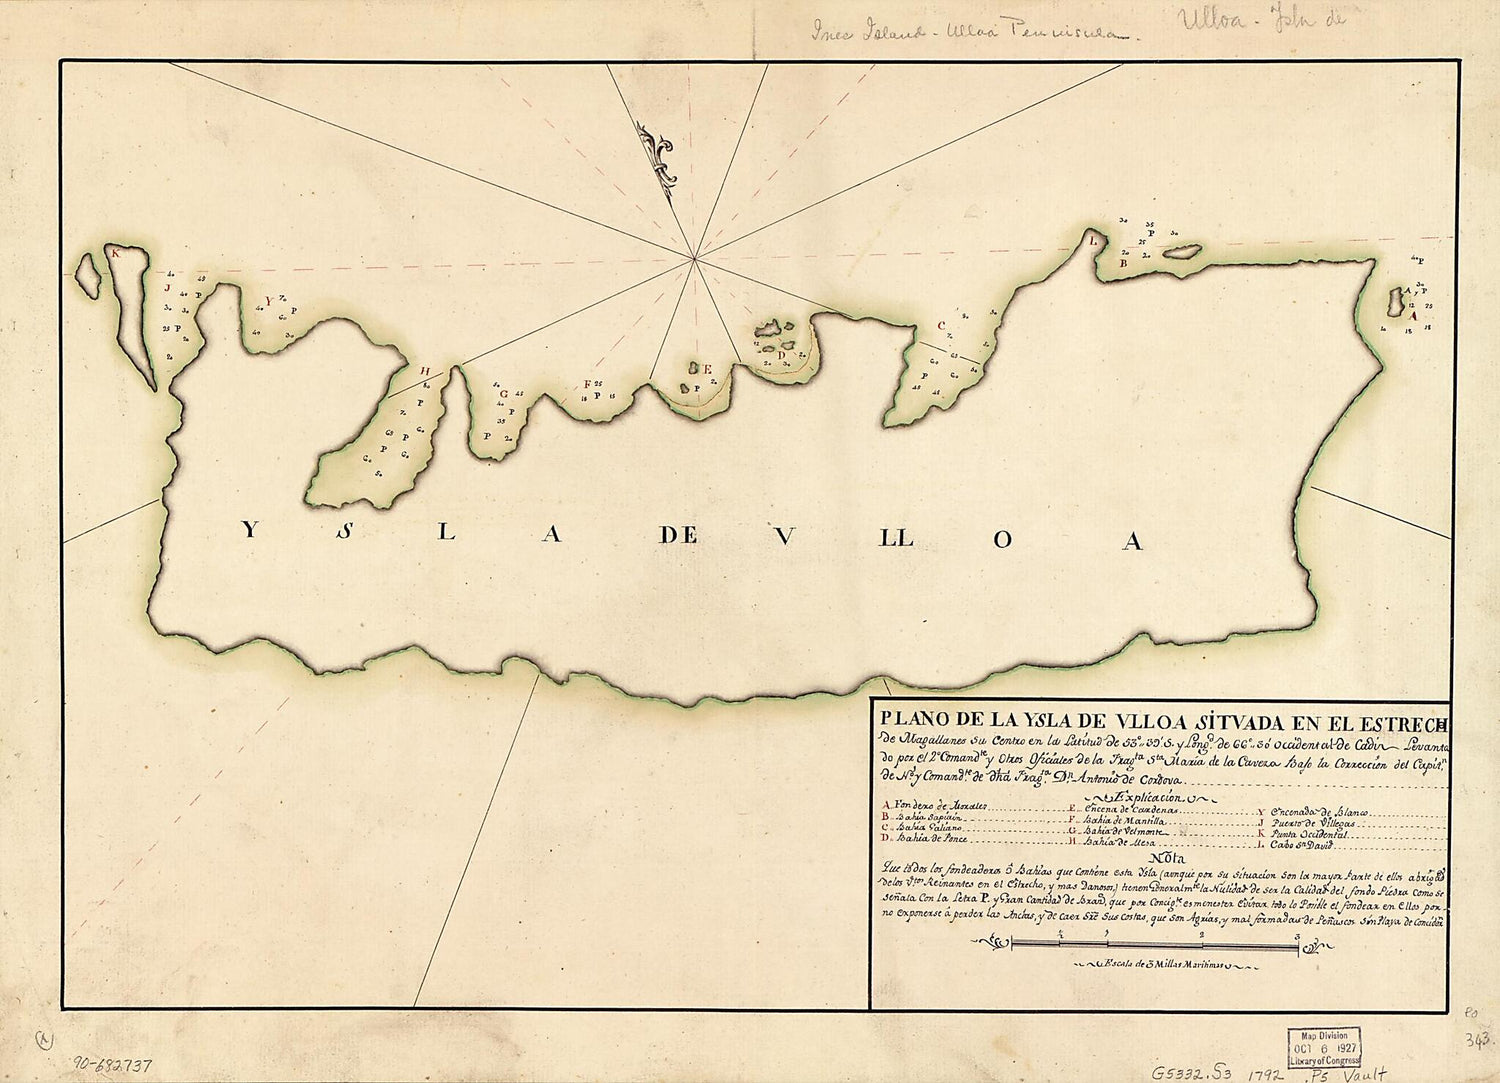 This old map of Plano De La Ysla De Ulloa Situada En El Estrecho De Magallanes Su Centro En La Latitud De 53⁰39ʹ S. Y Longd. De 66⁰30ʹ Occidental De Cádiz from 1792 was created by Antonio De Córdoba in 1792